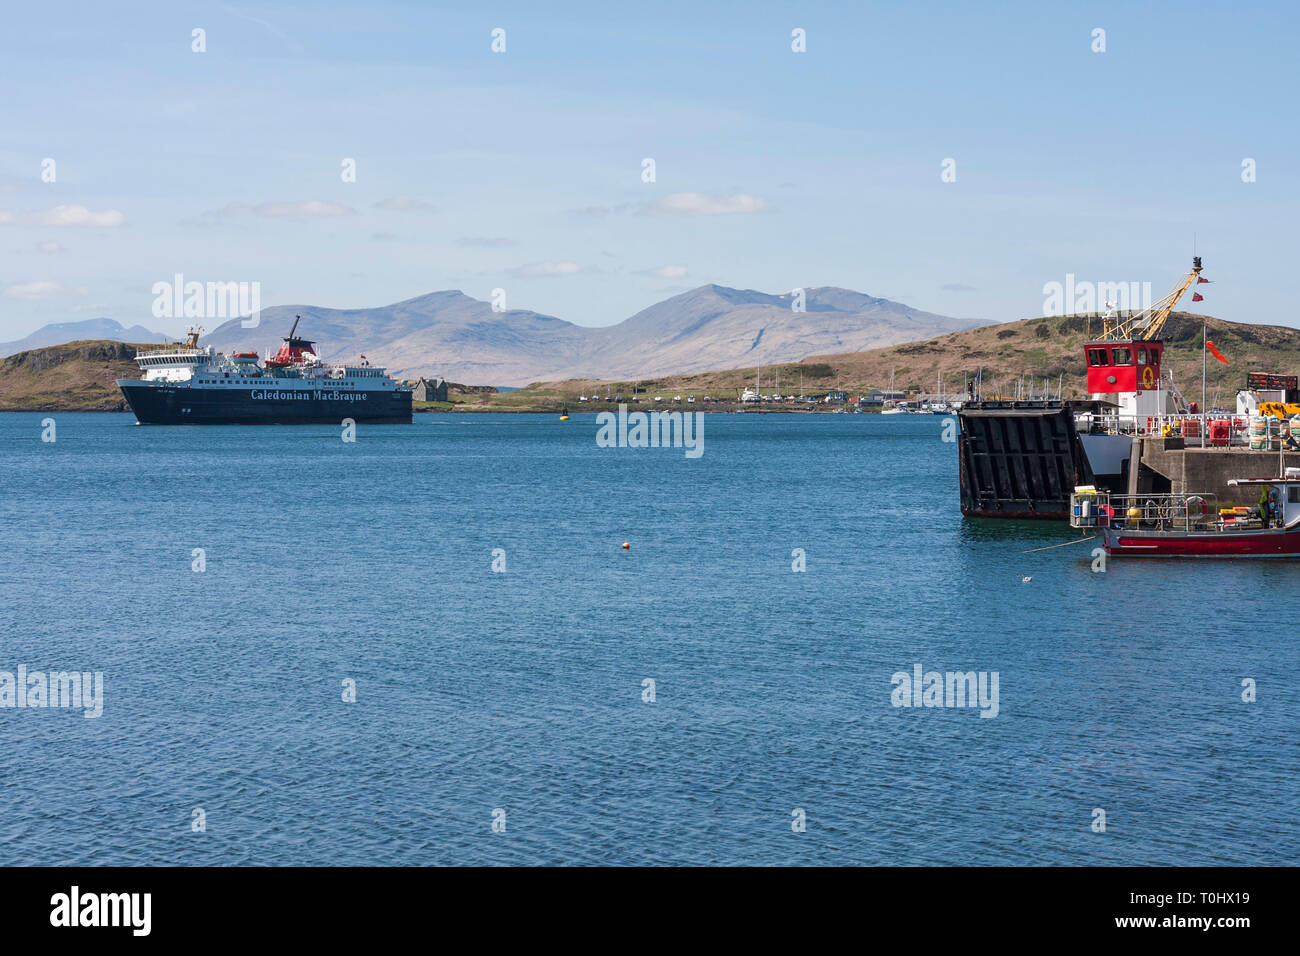 Le port de ferry de l'île de la voile à quai à Oban, Argyll & Bute, Ecosse Banque D'Images